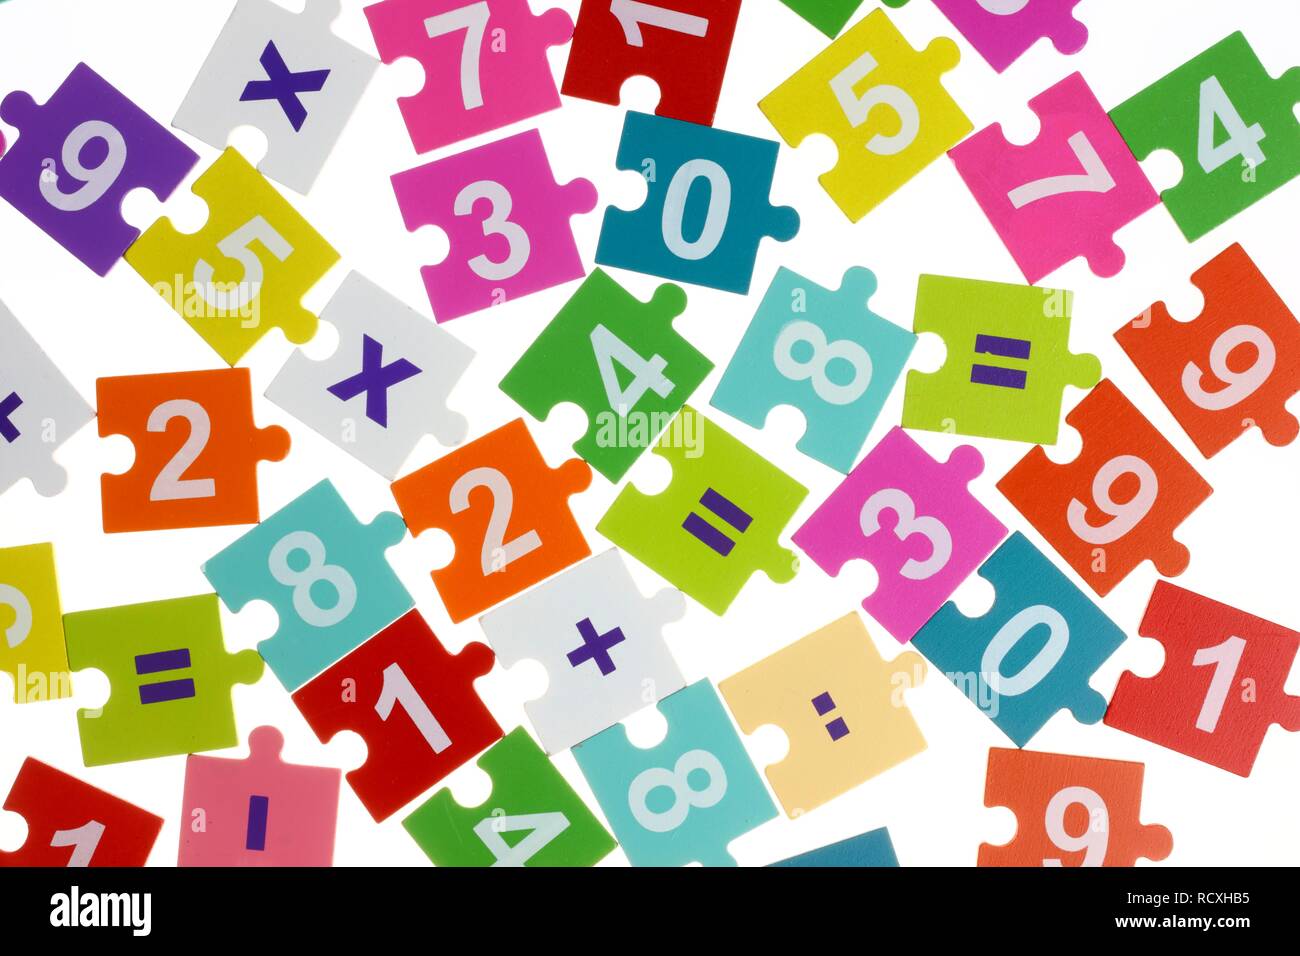 Puzzle avec des symboles mathématiques nombres Banque D'Images